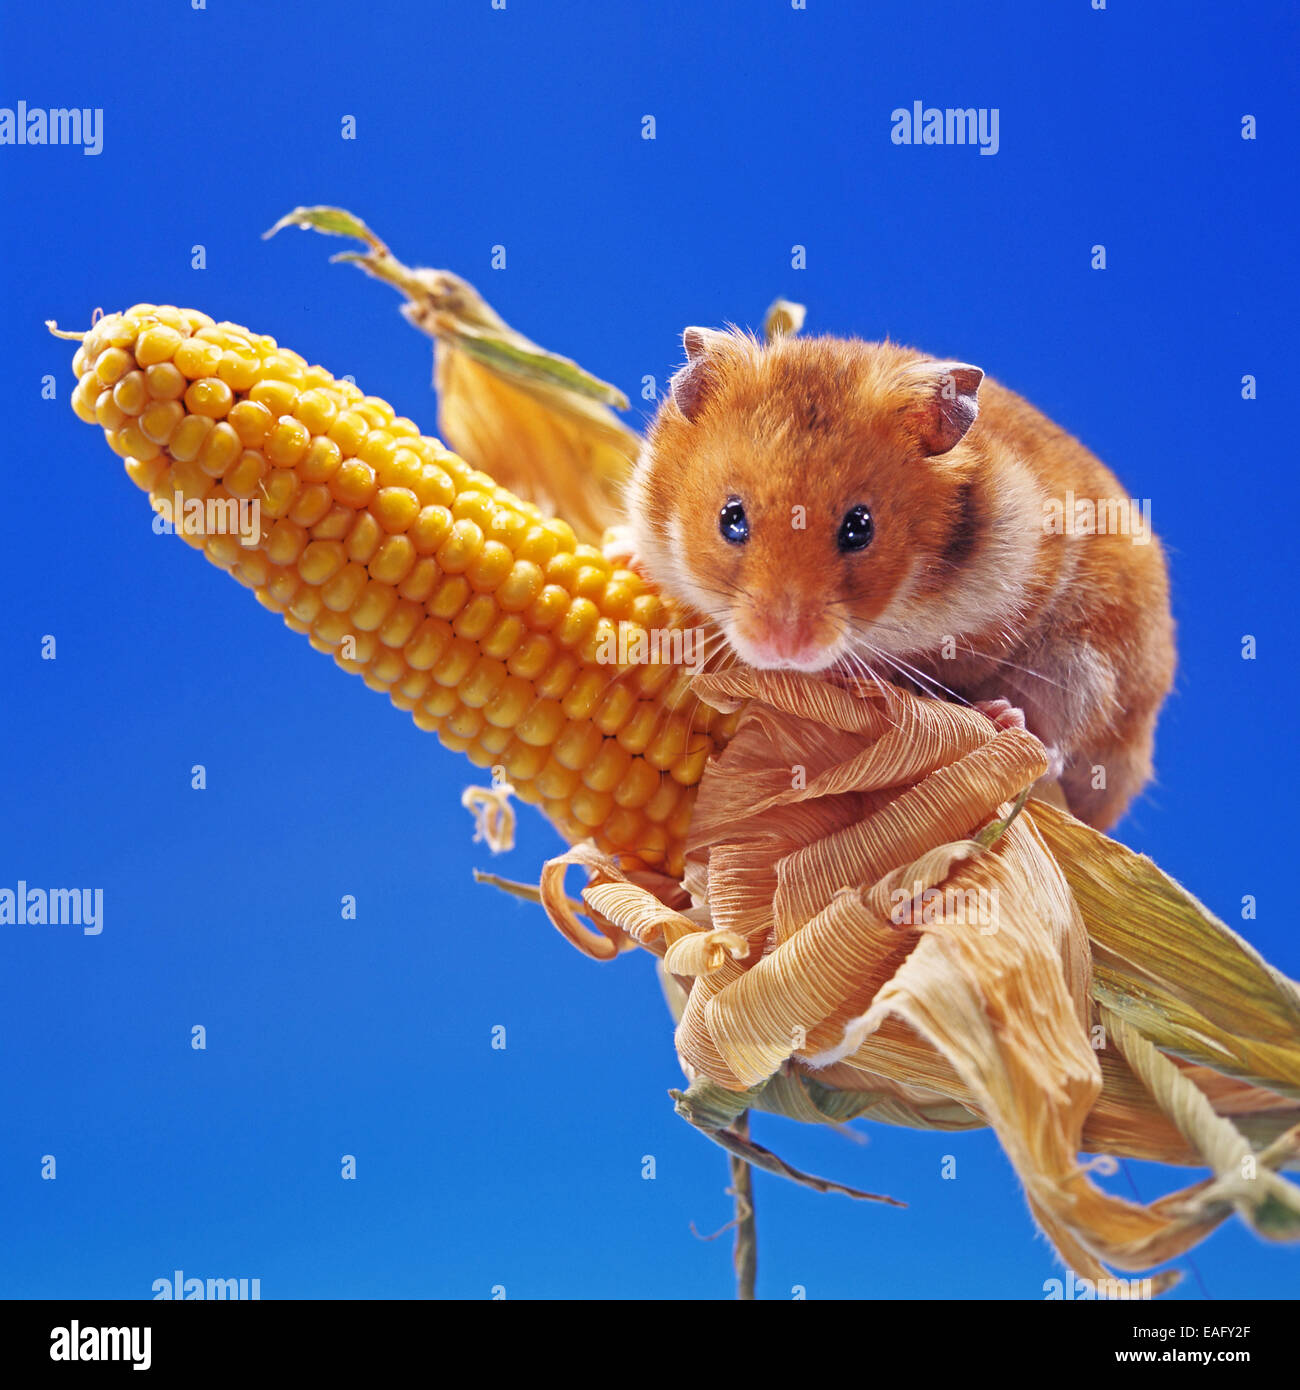 Hamster doré grimper sur un épi de maïs Banque D'Images